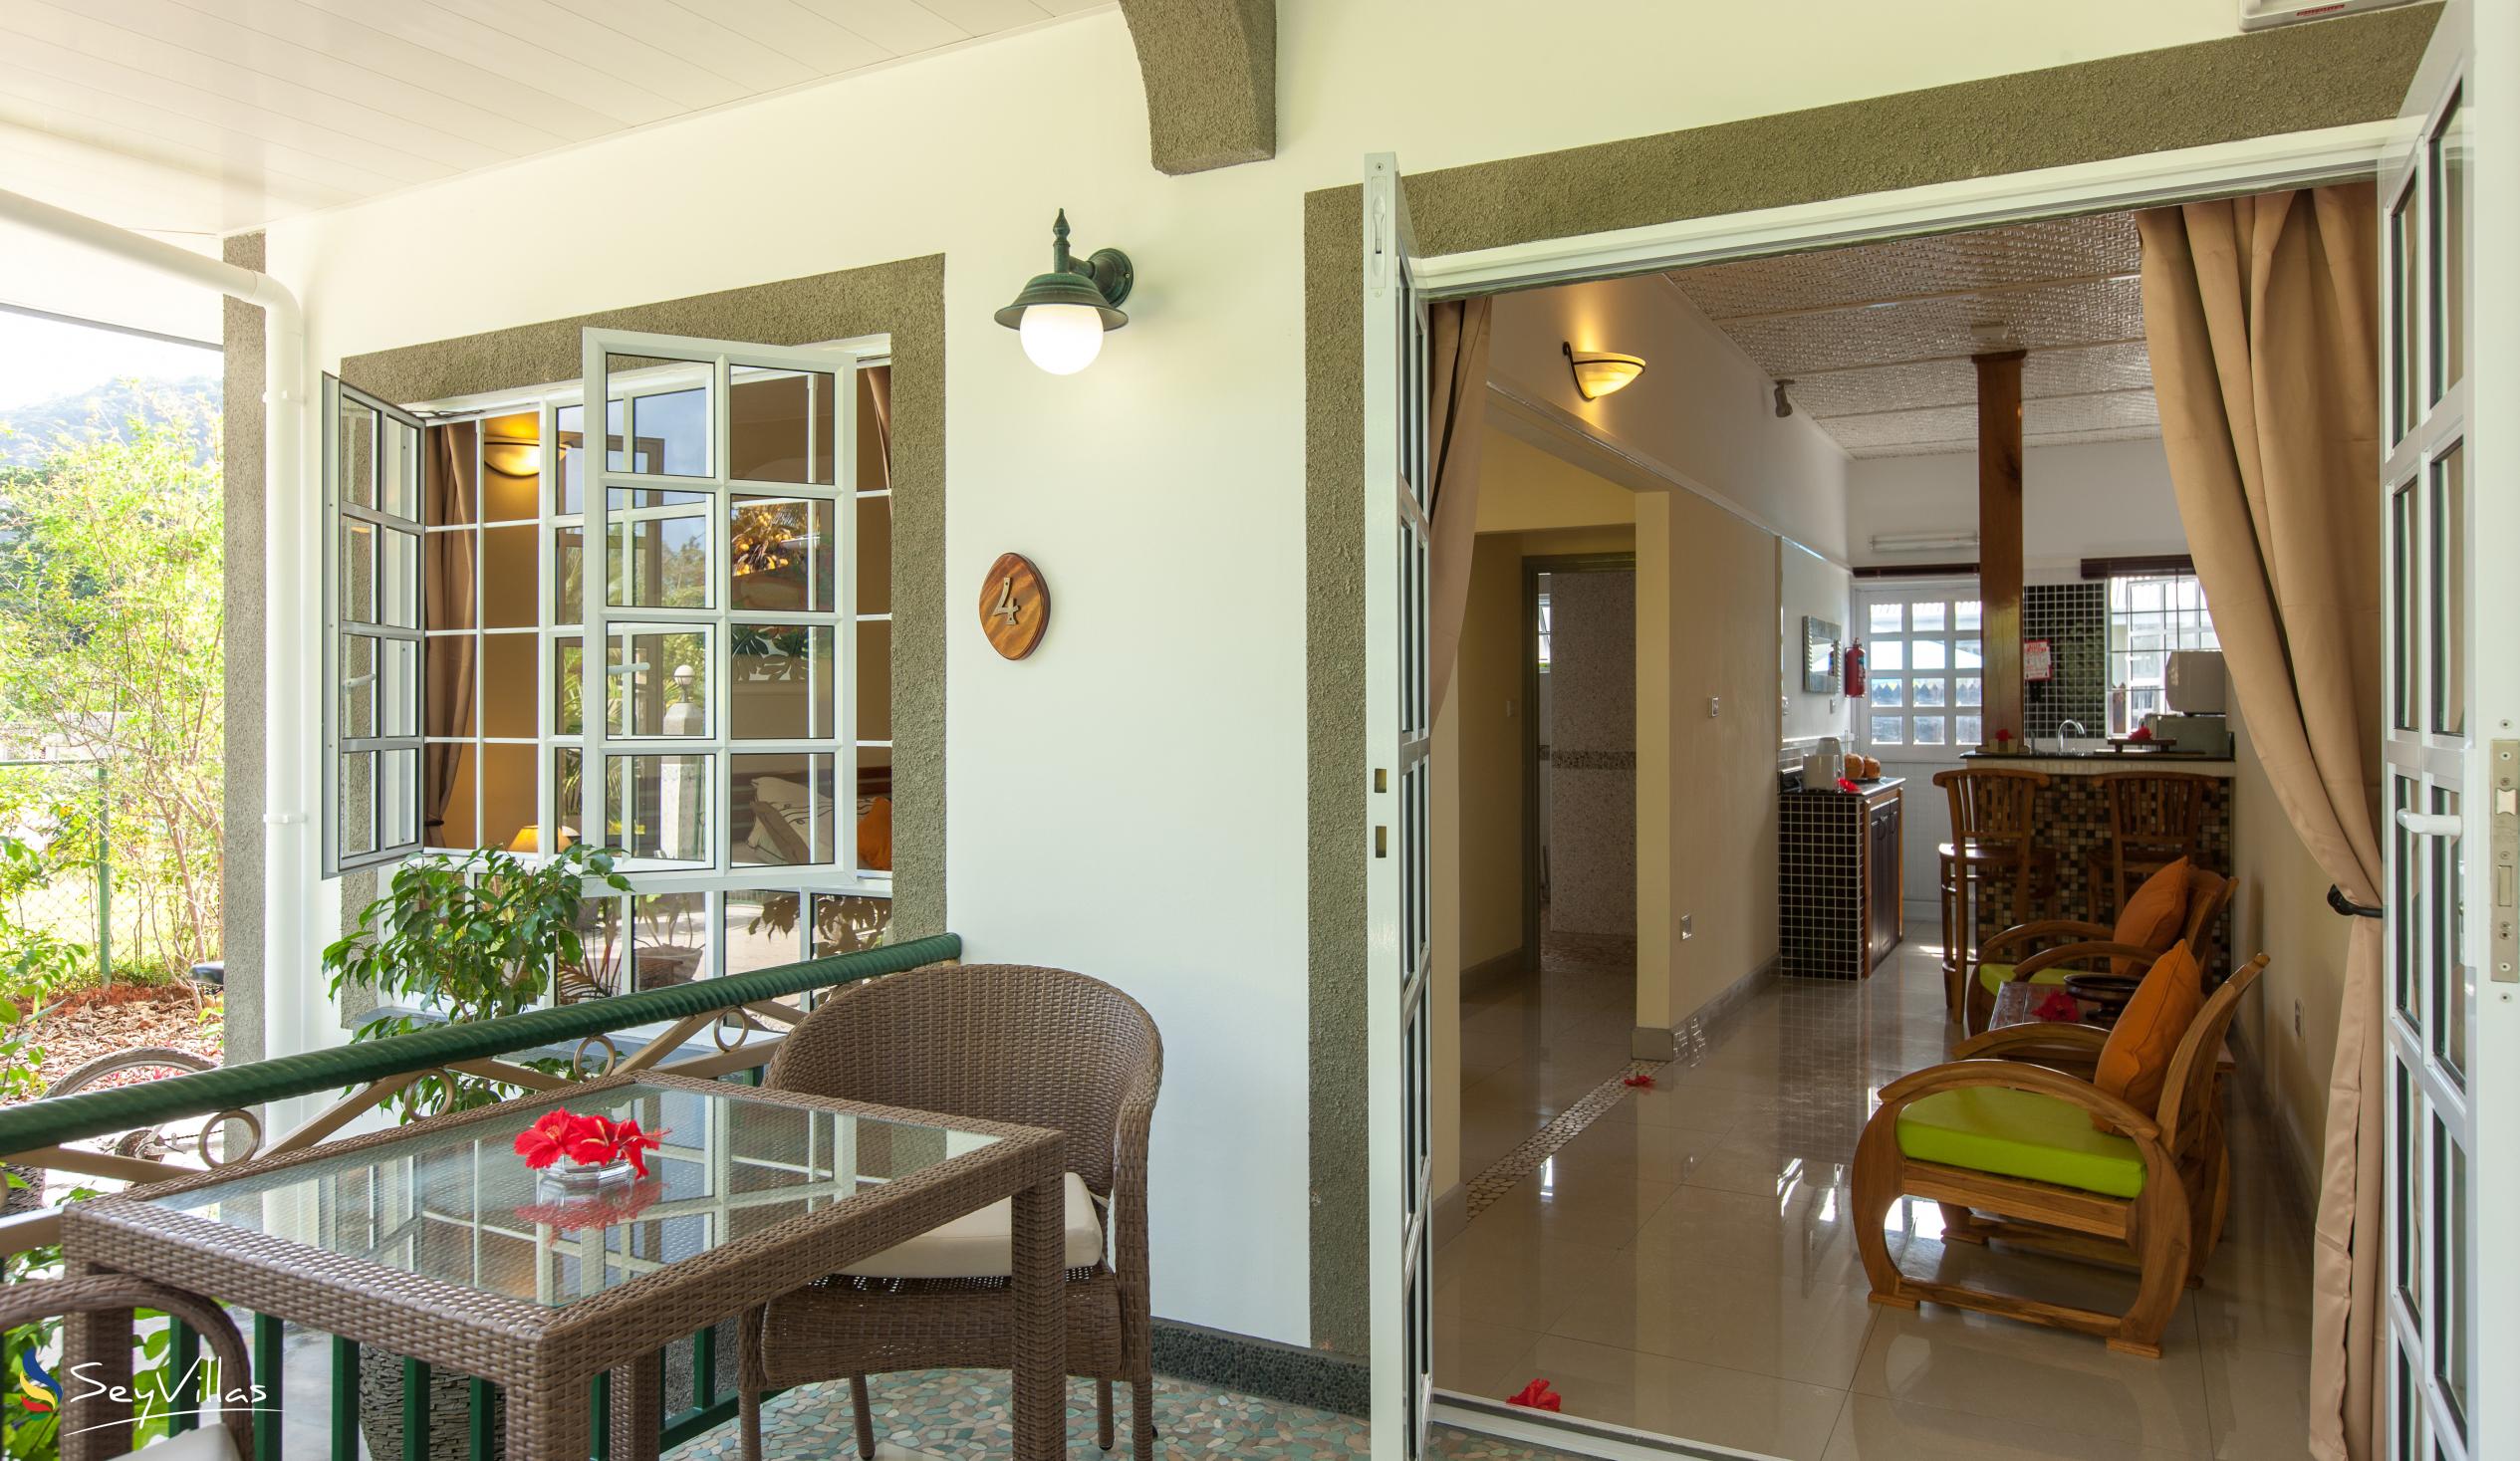 Foto 11: Maison Charme De L'ile - Garden View Apartment - La Digue (Seychellen)